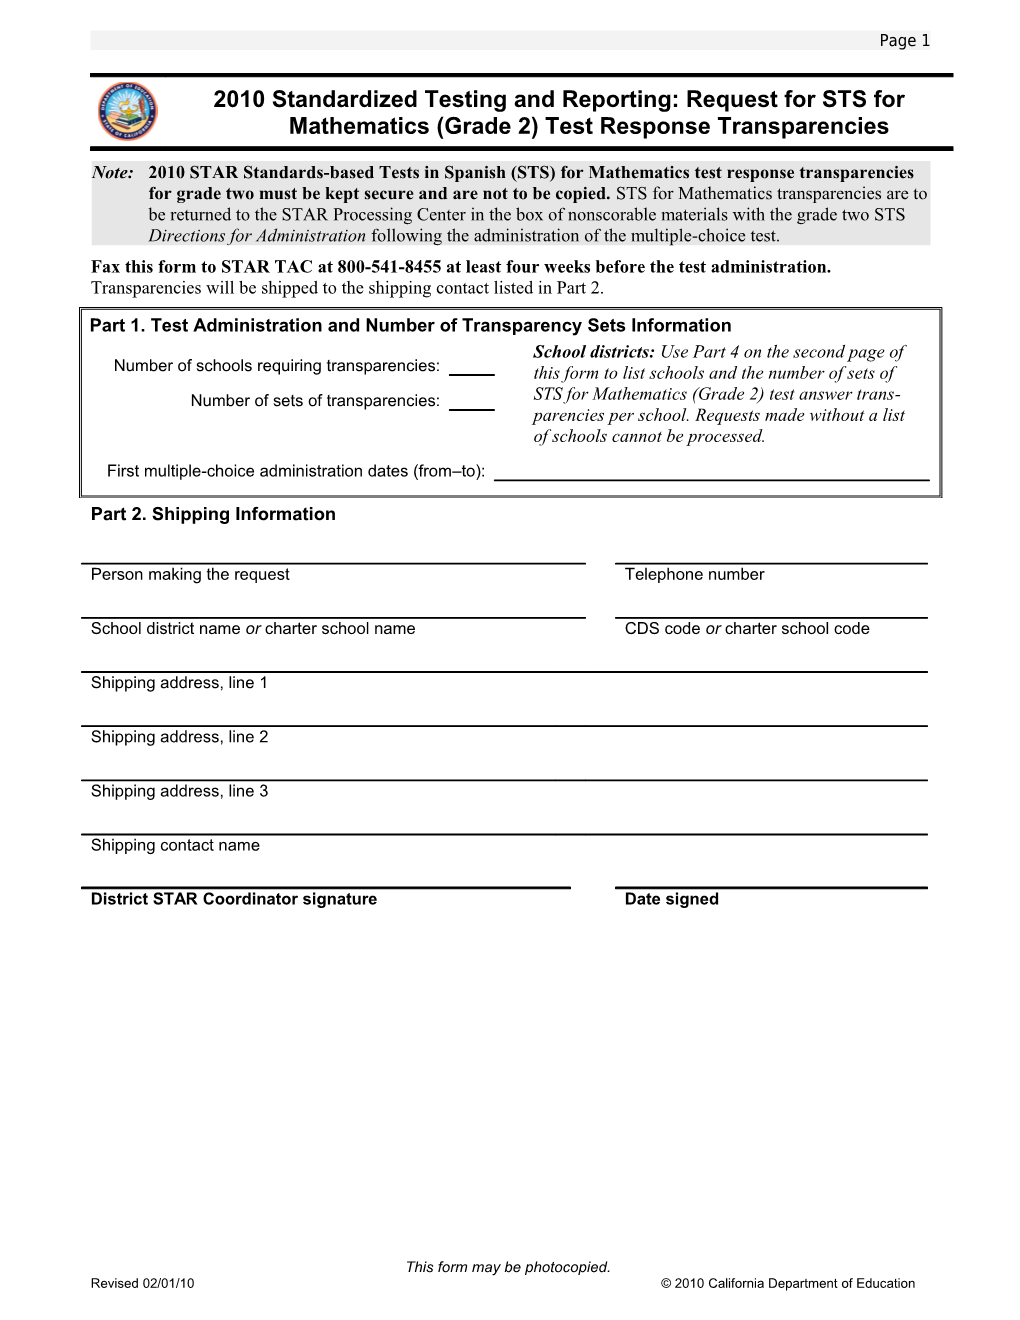 STAR Grade 2 Math Transparencies Request Form